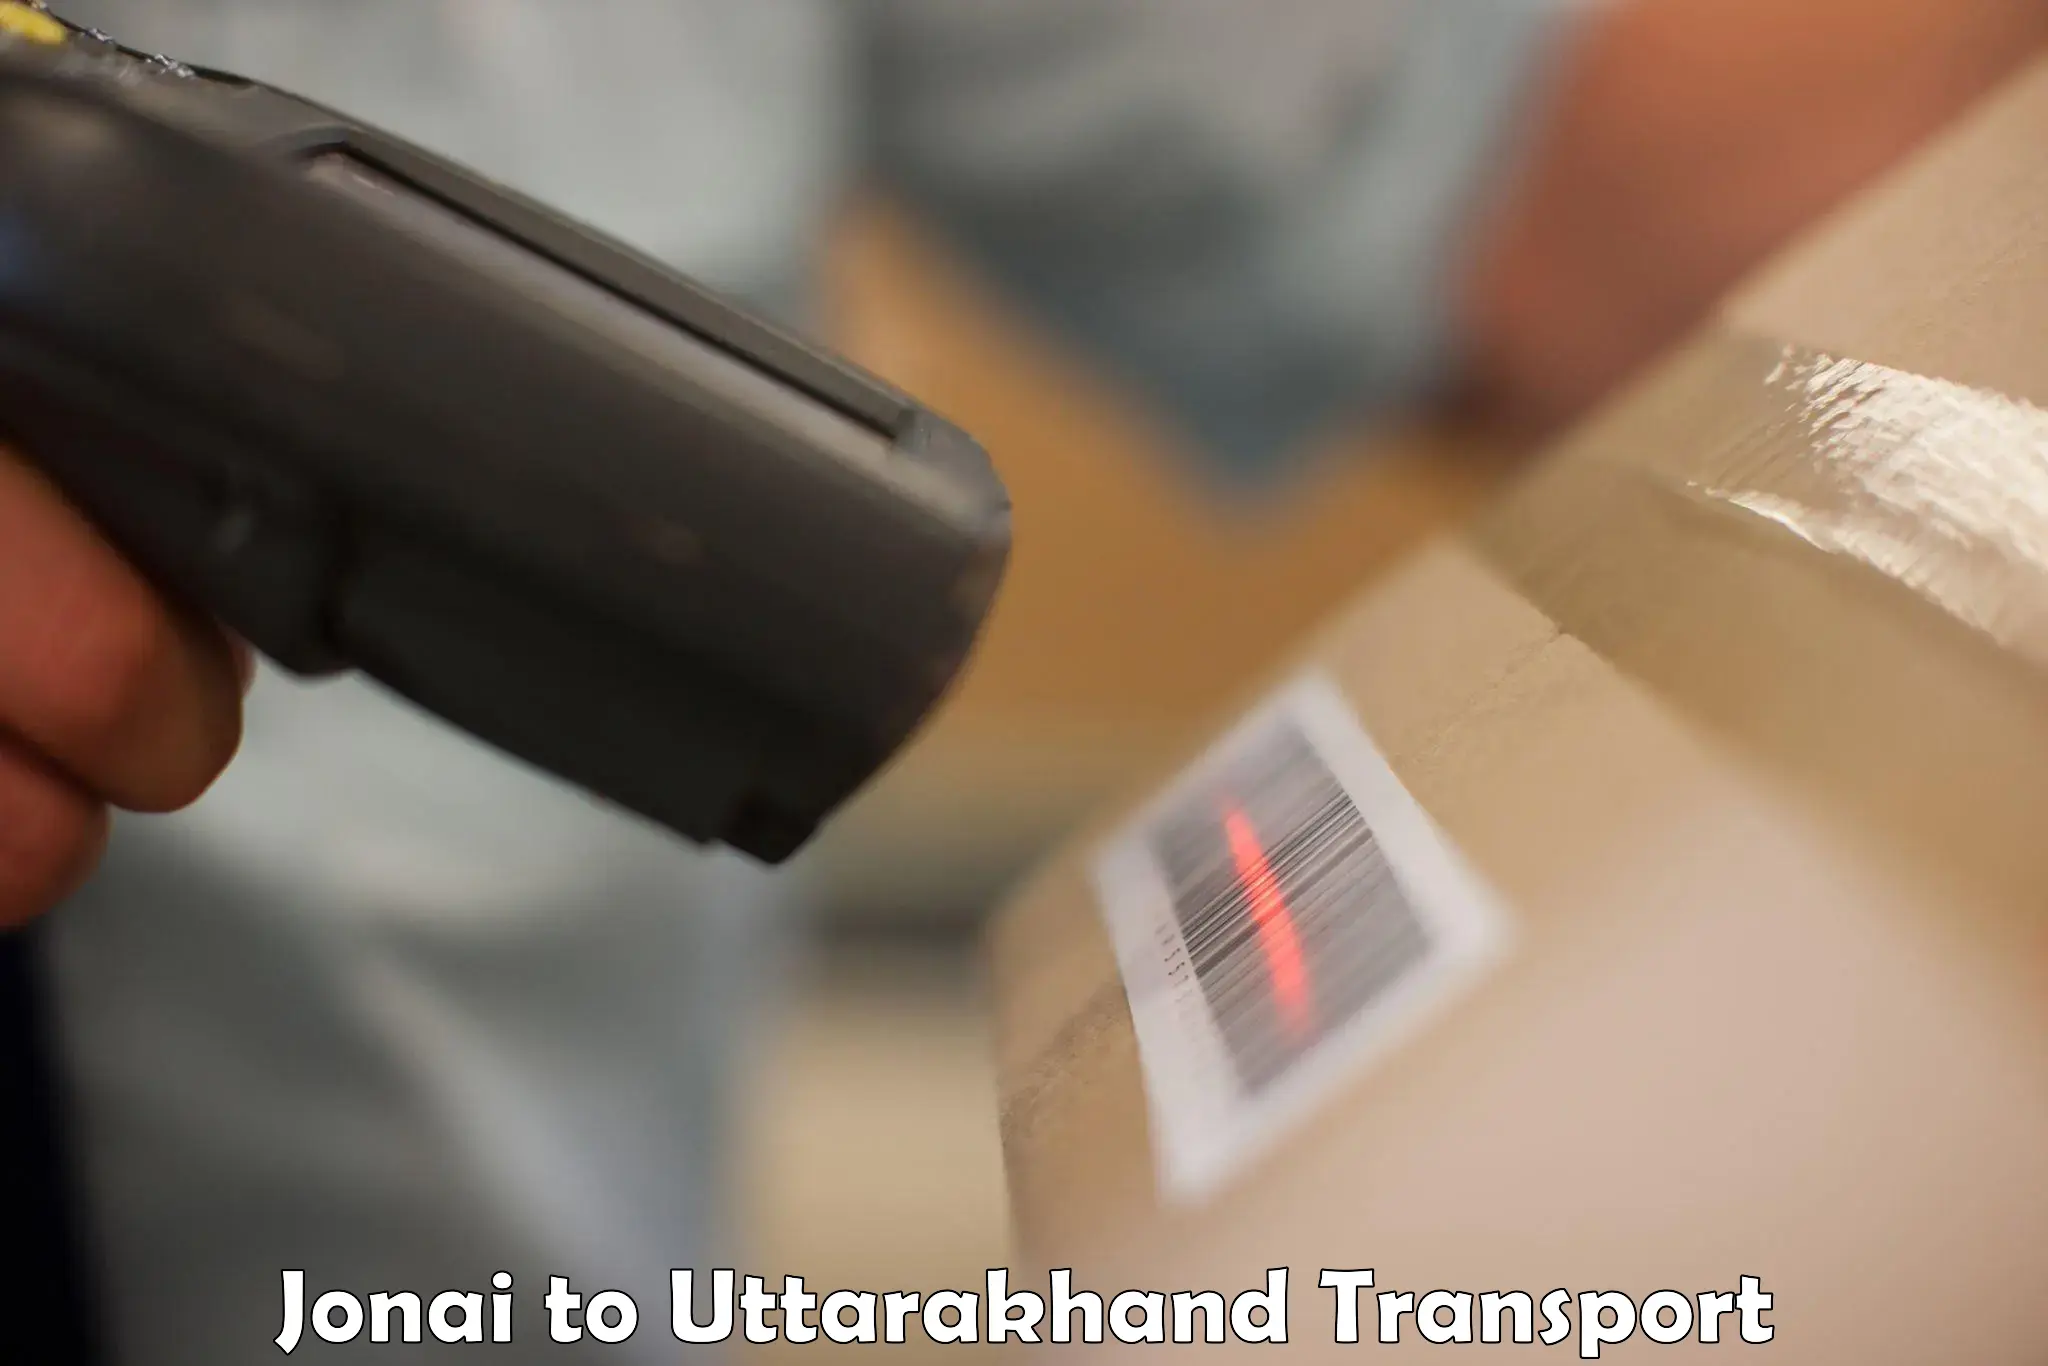 Nearest transport service Jonai to Uttarakhand